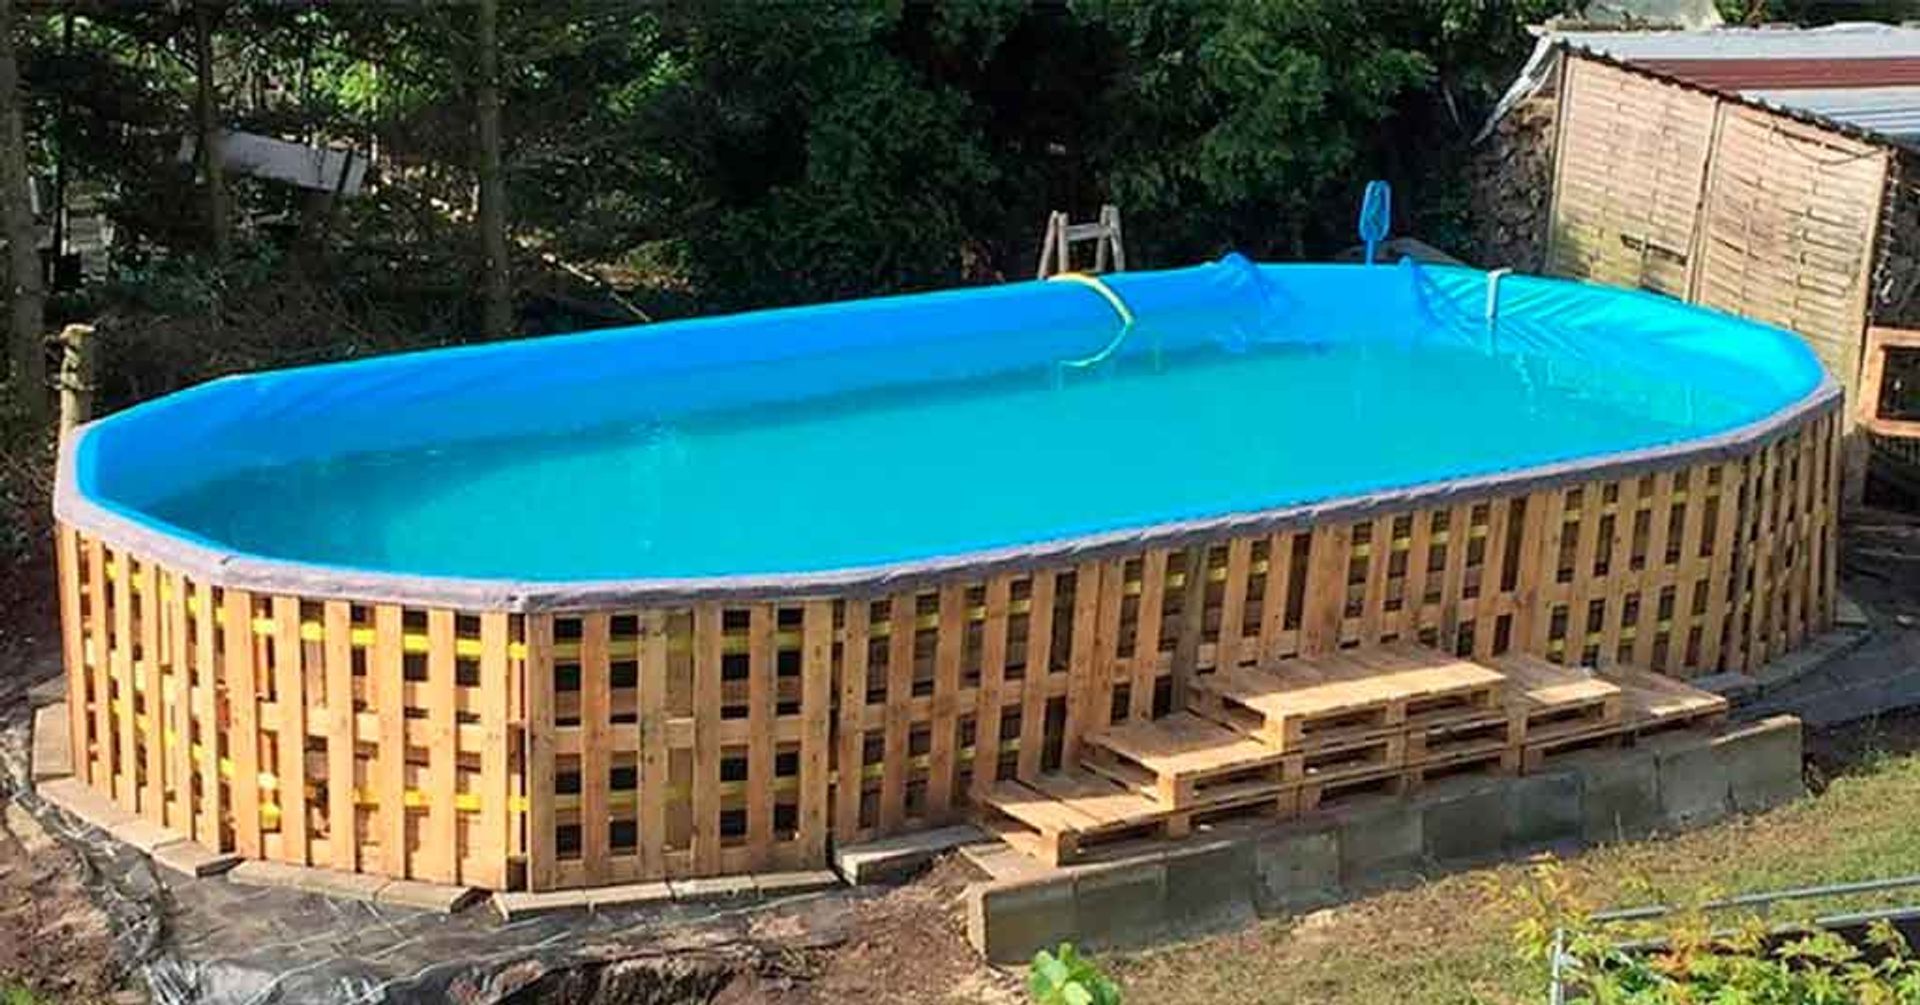 Natura gebruik fluweel Een eigen zwembad bouwen voor nog geen 250 euro| Gewoonvoorhem